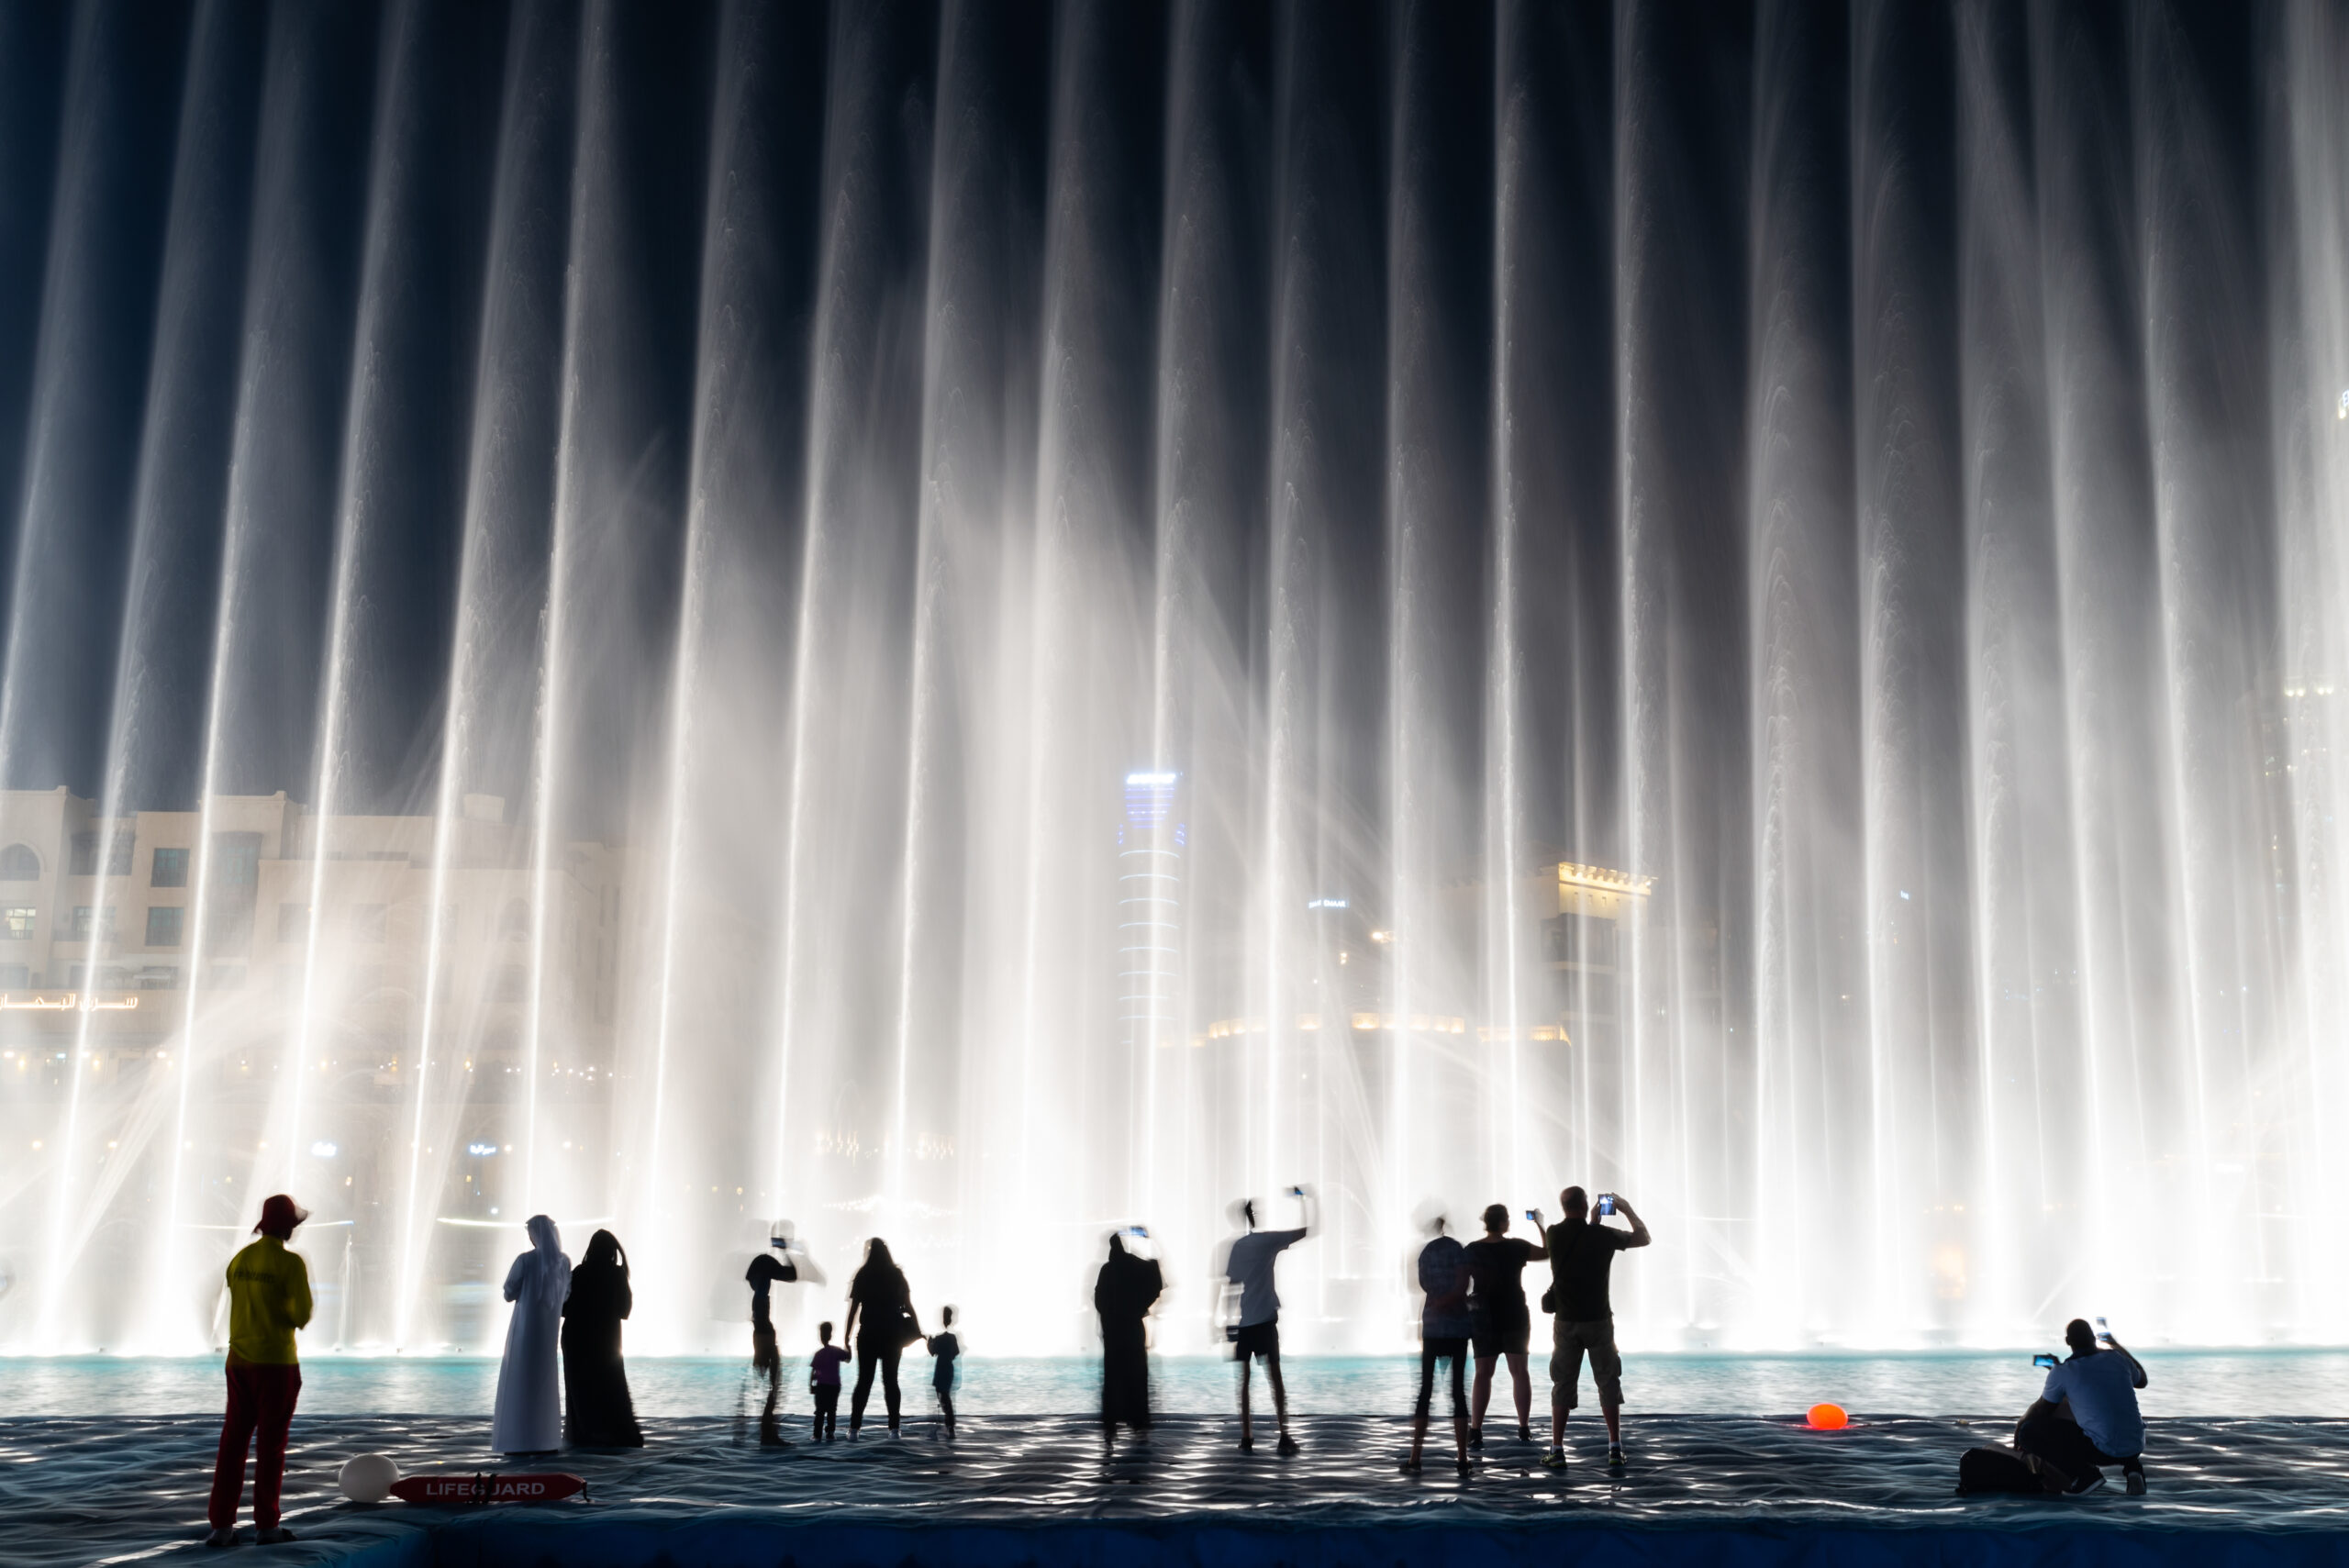 Dubai Fountain - Boardwalk